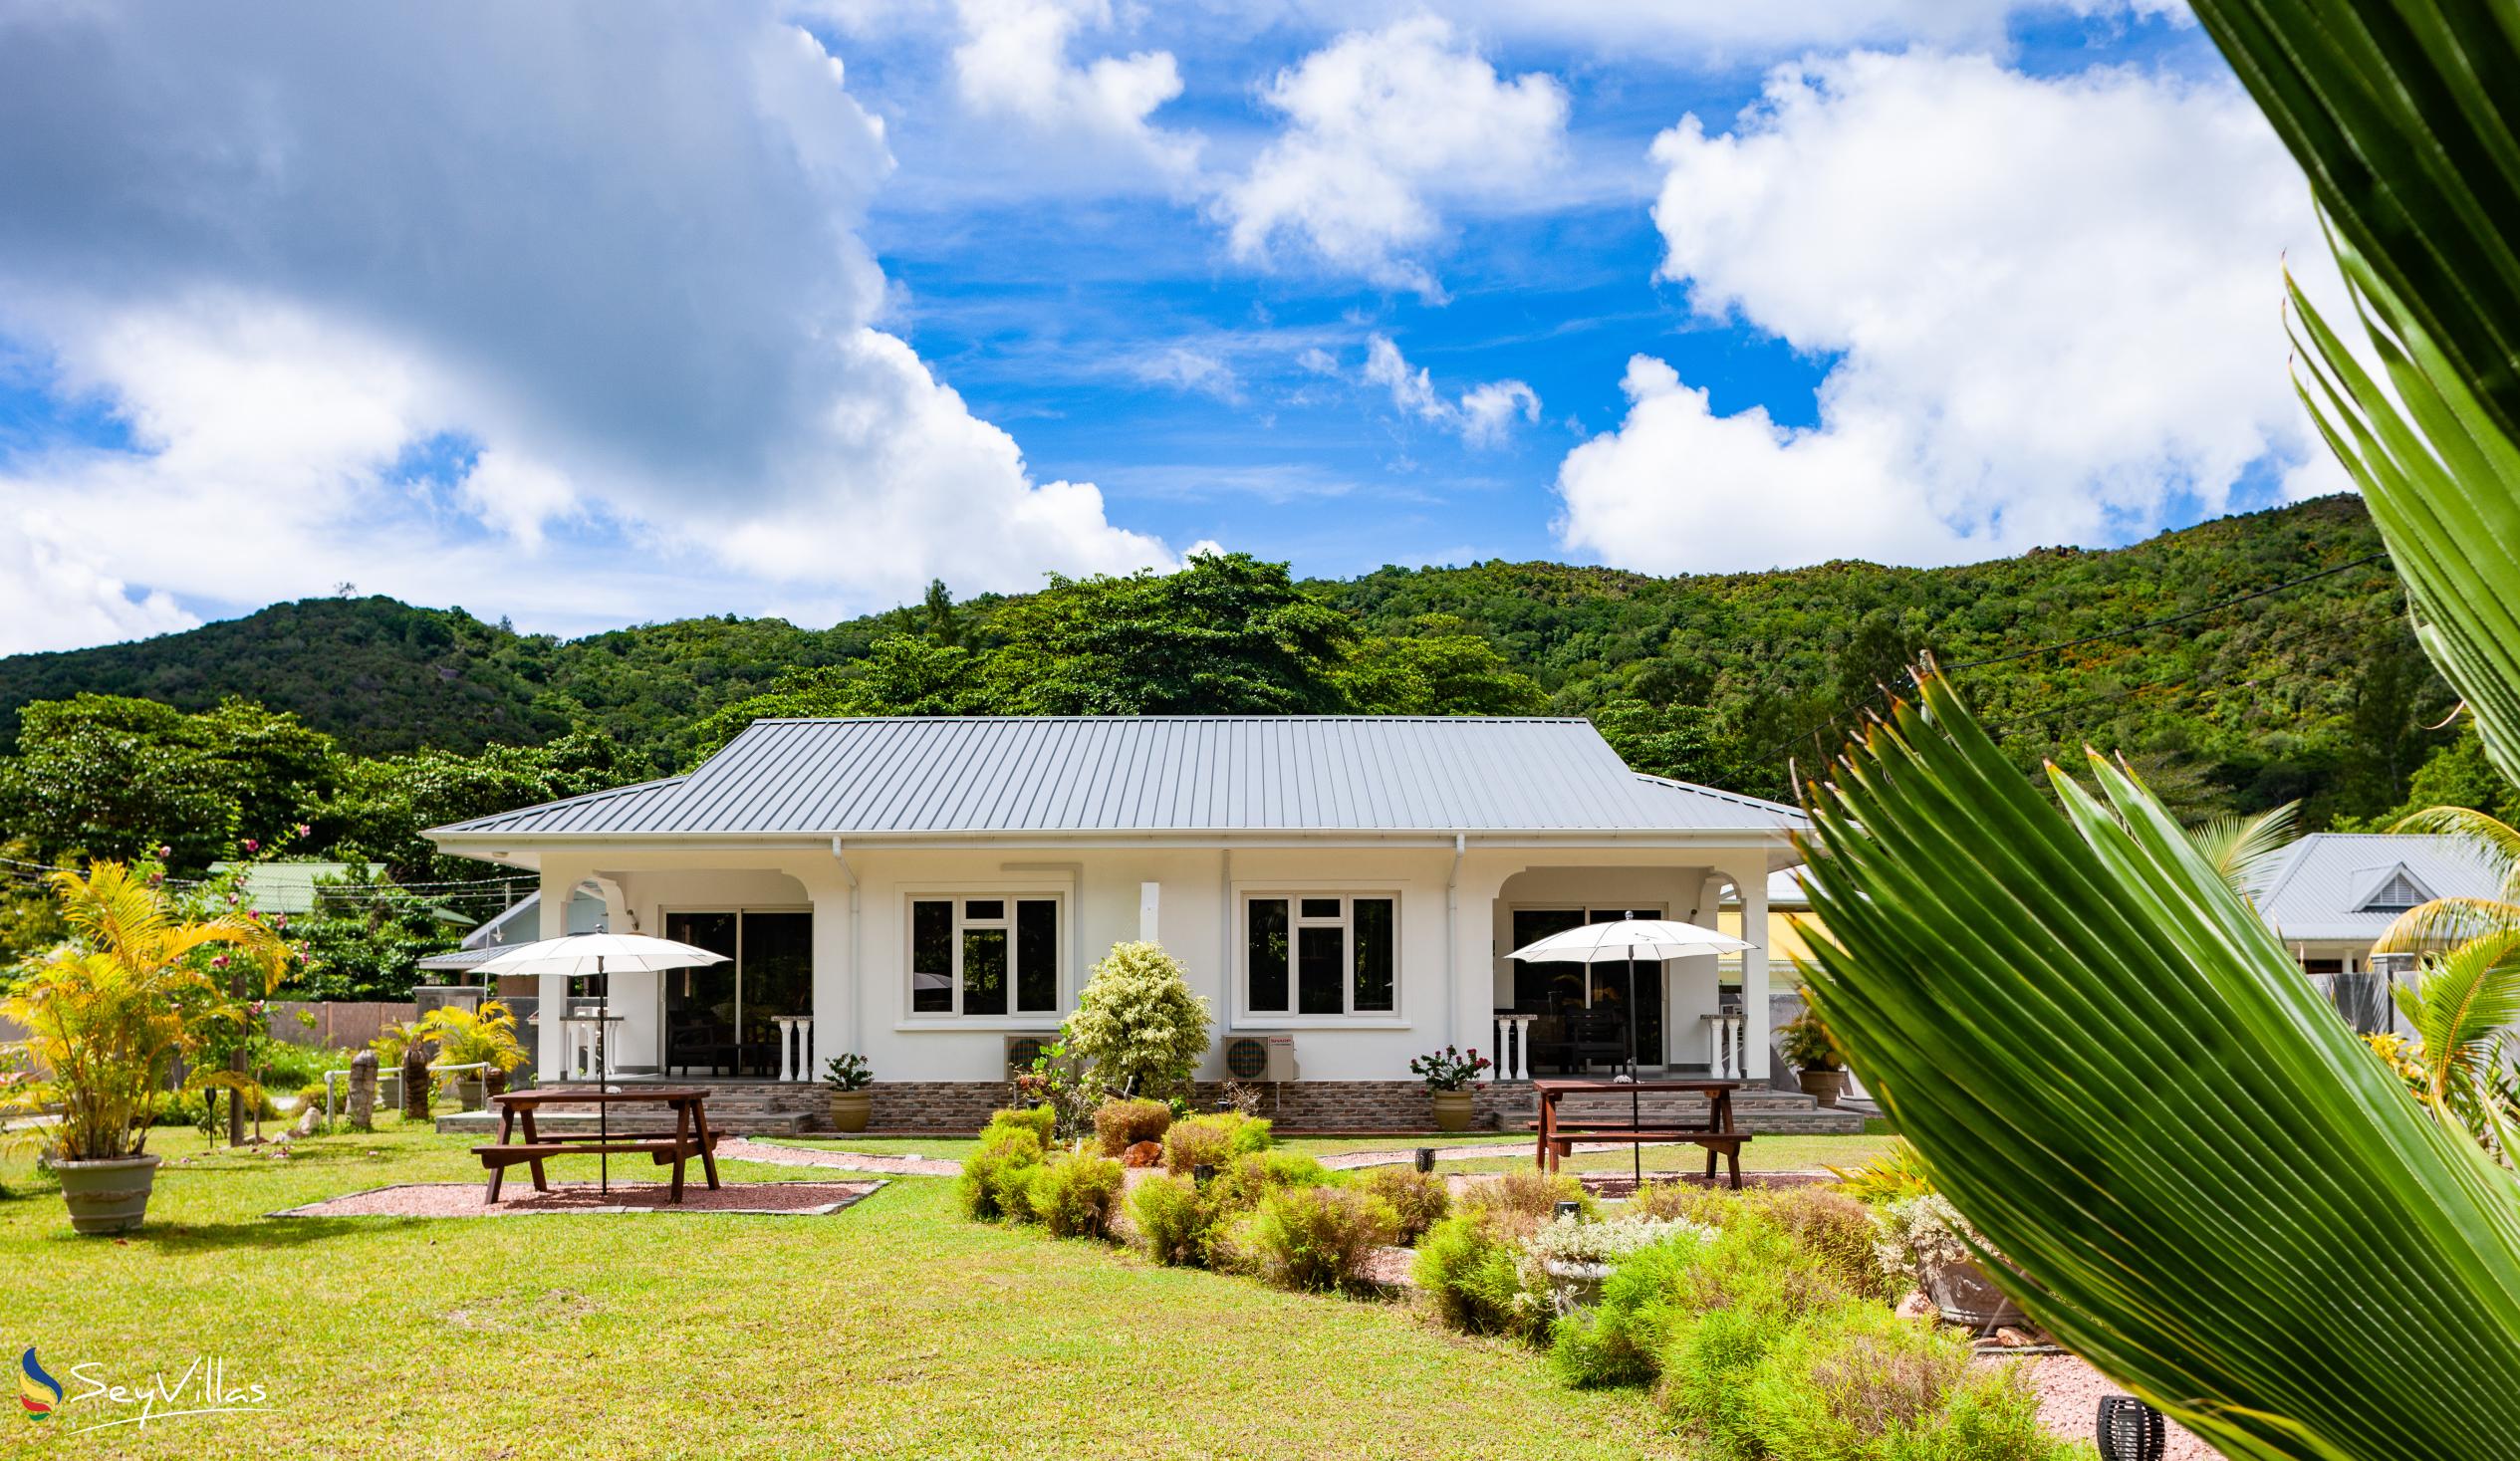 Foto 4: ANV Holiday Apartments - Aussenbereich - Praslin (Seychellen)